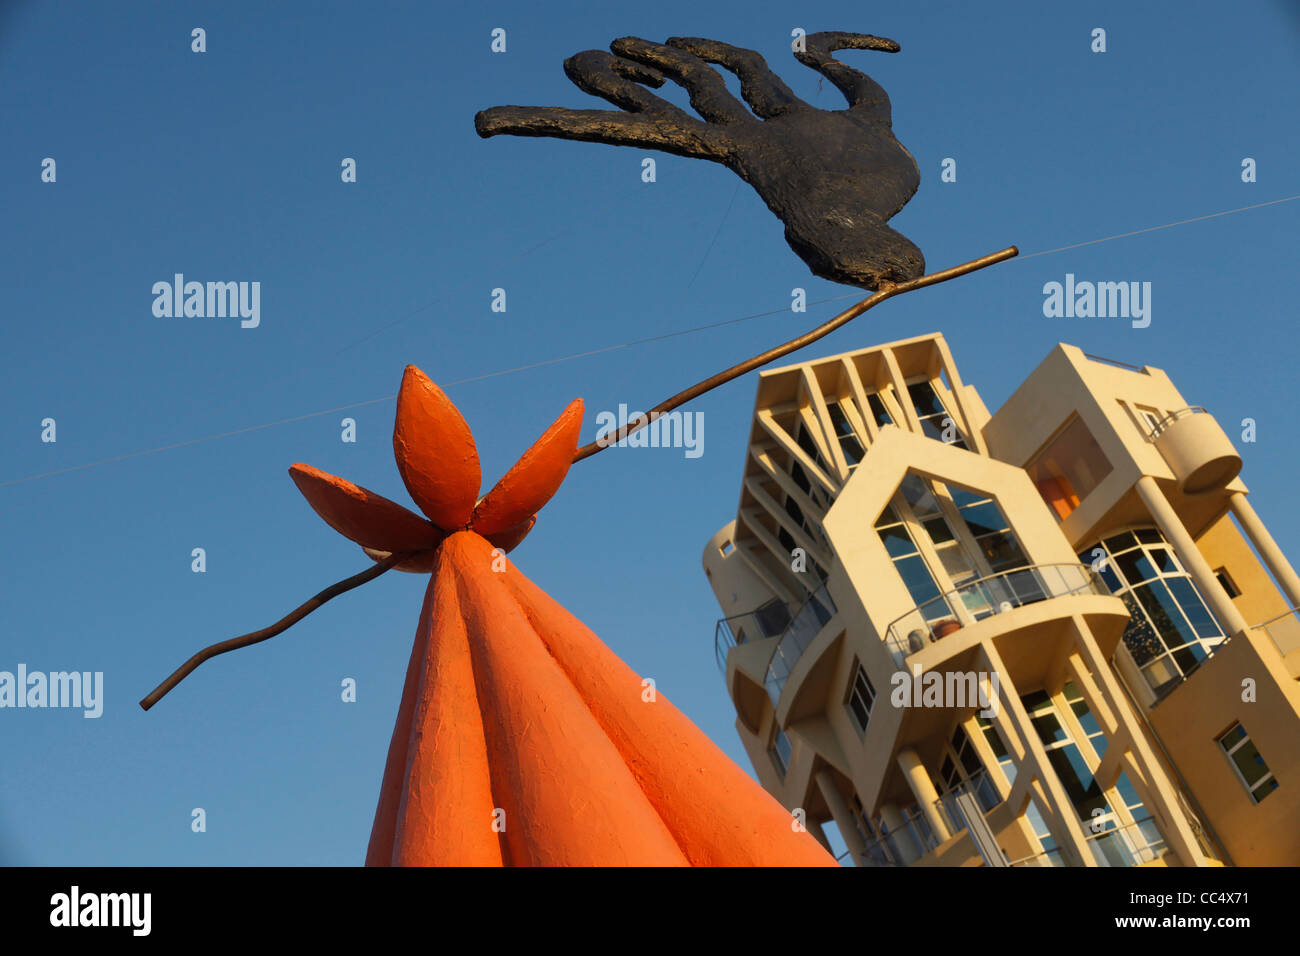 Sculpture de l'artiste israélien David Ben Tsadok avec bâtiment résidentiel construit dans un style moderne, l'architecture sur la rue Herbert Samuel seacoast de Tel Aviv ISRAËL Banque D'Images